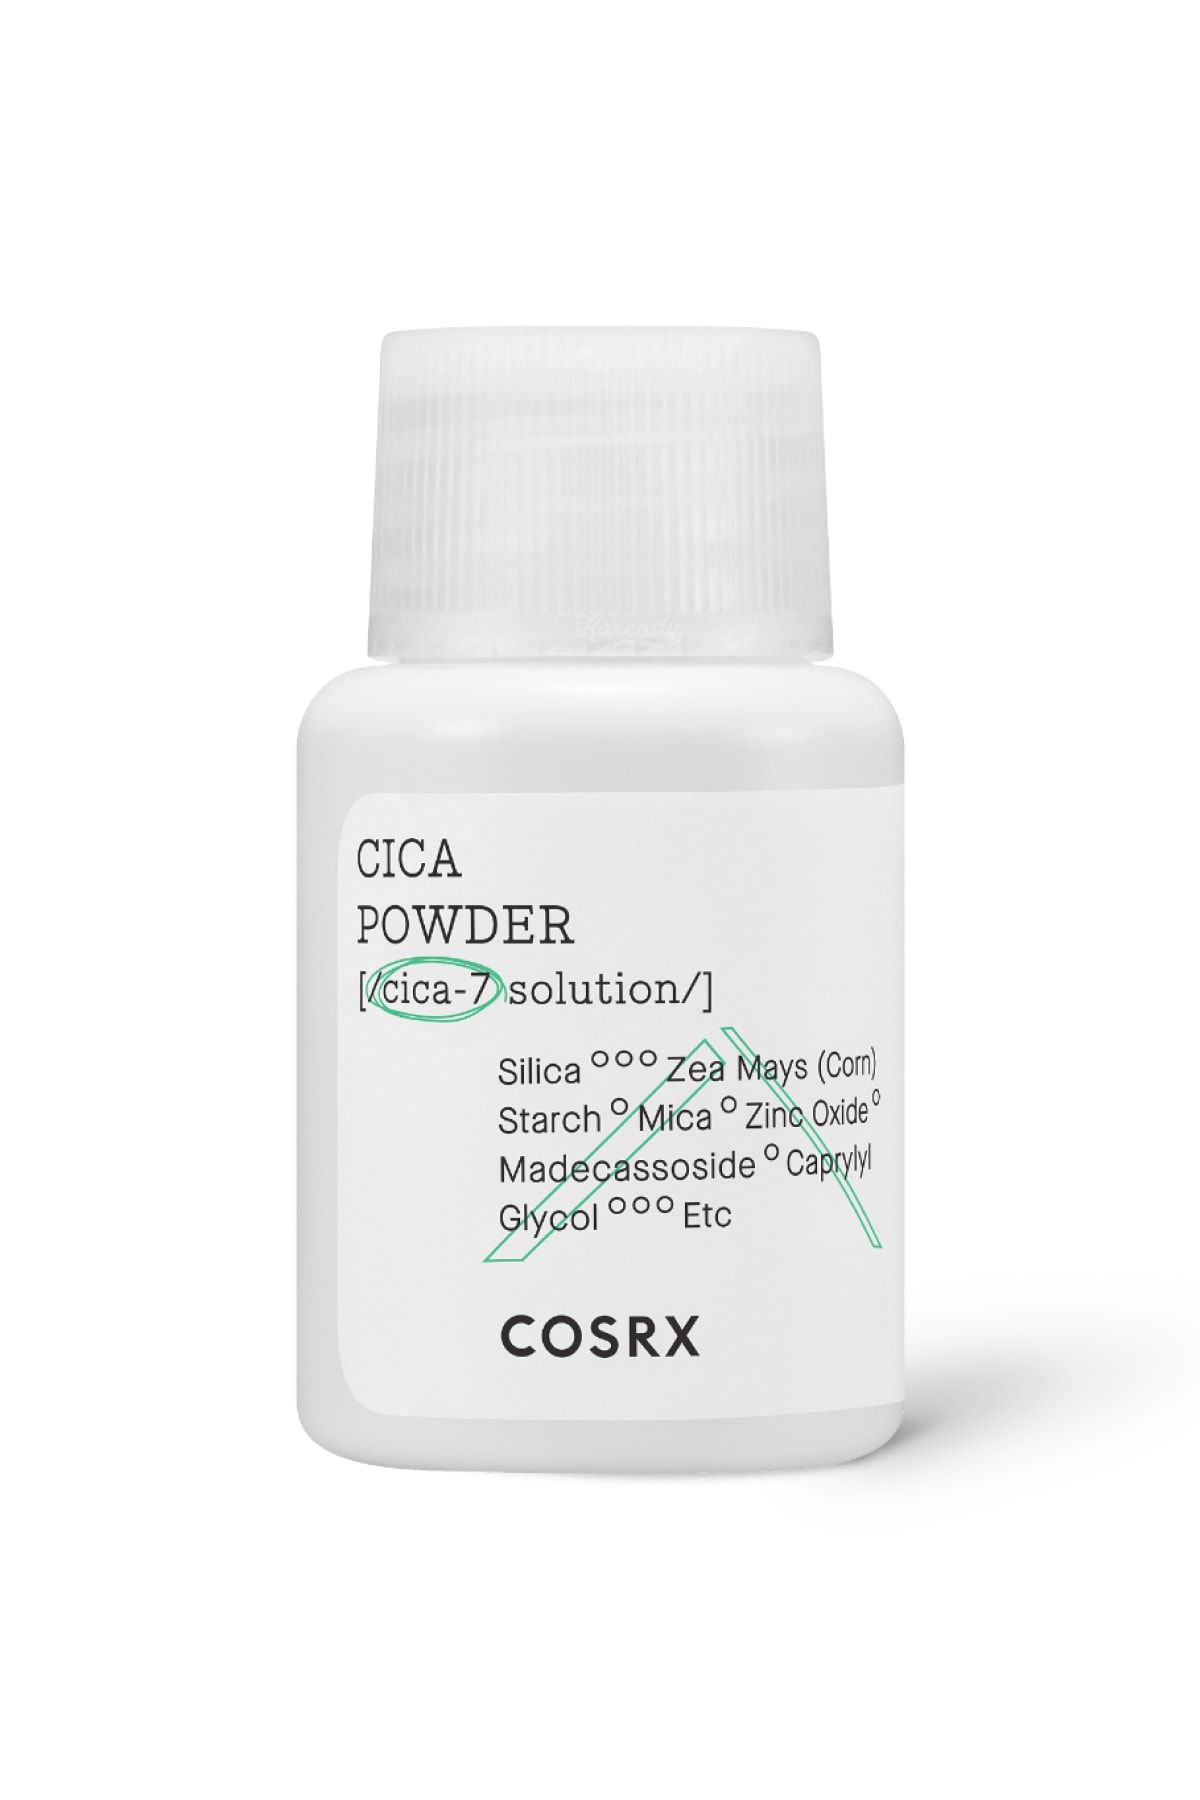 Cosrx Pure Fit Cica Powder - Sakinleştirici Cica Tozu 7gr